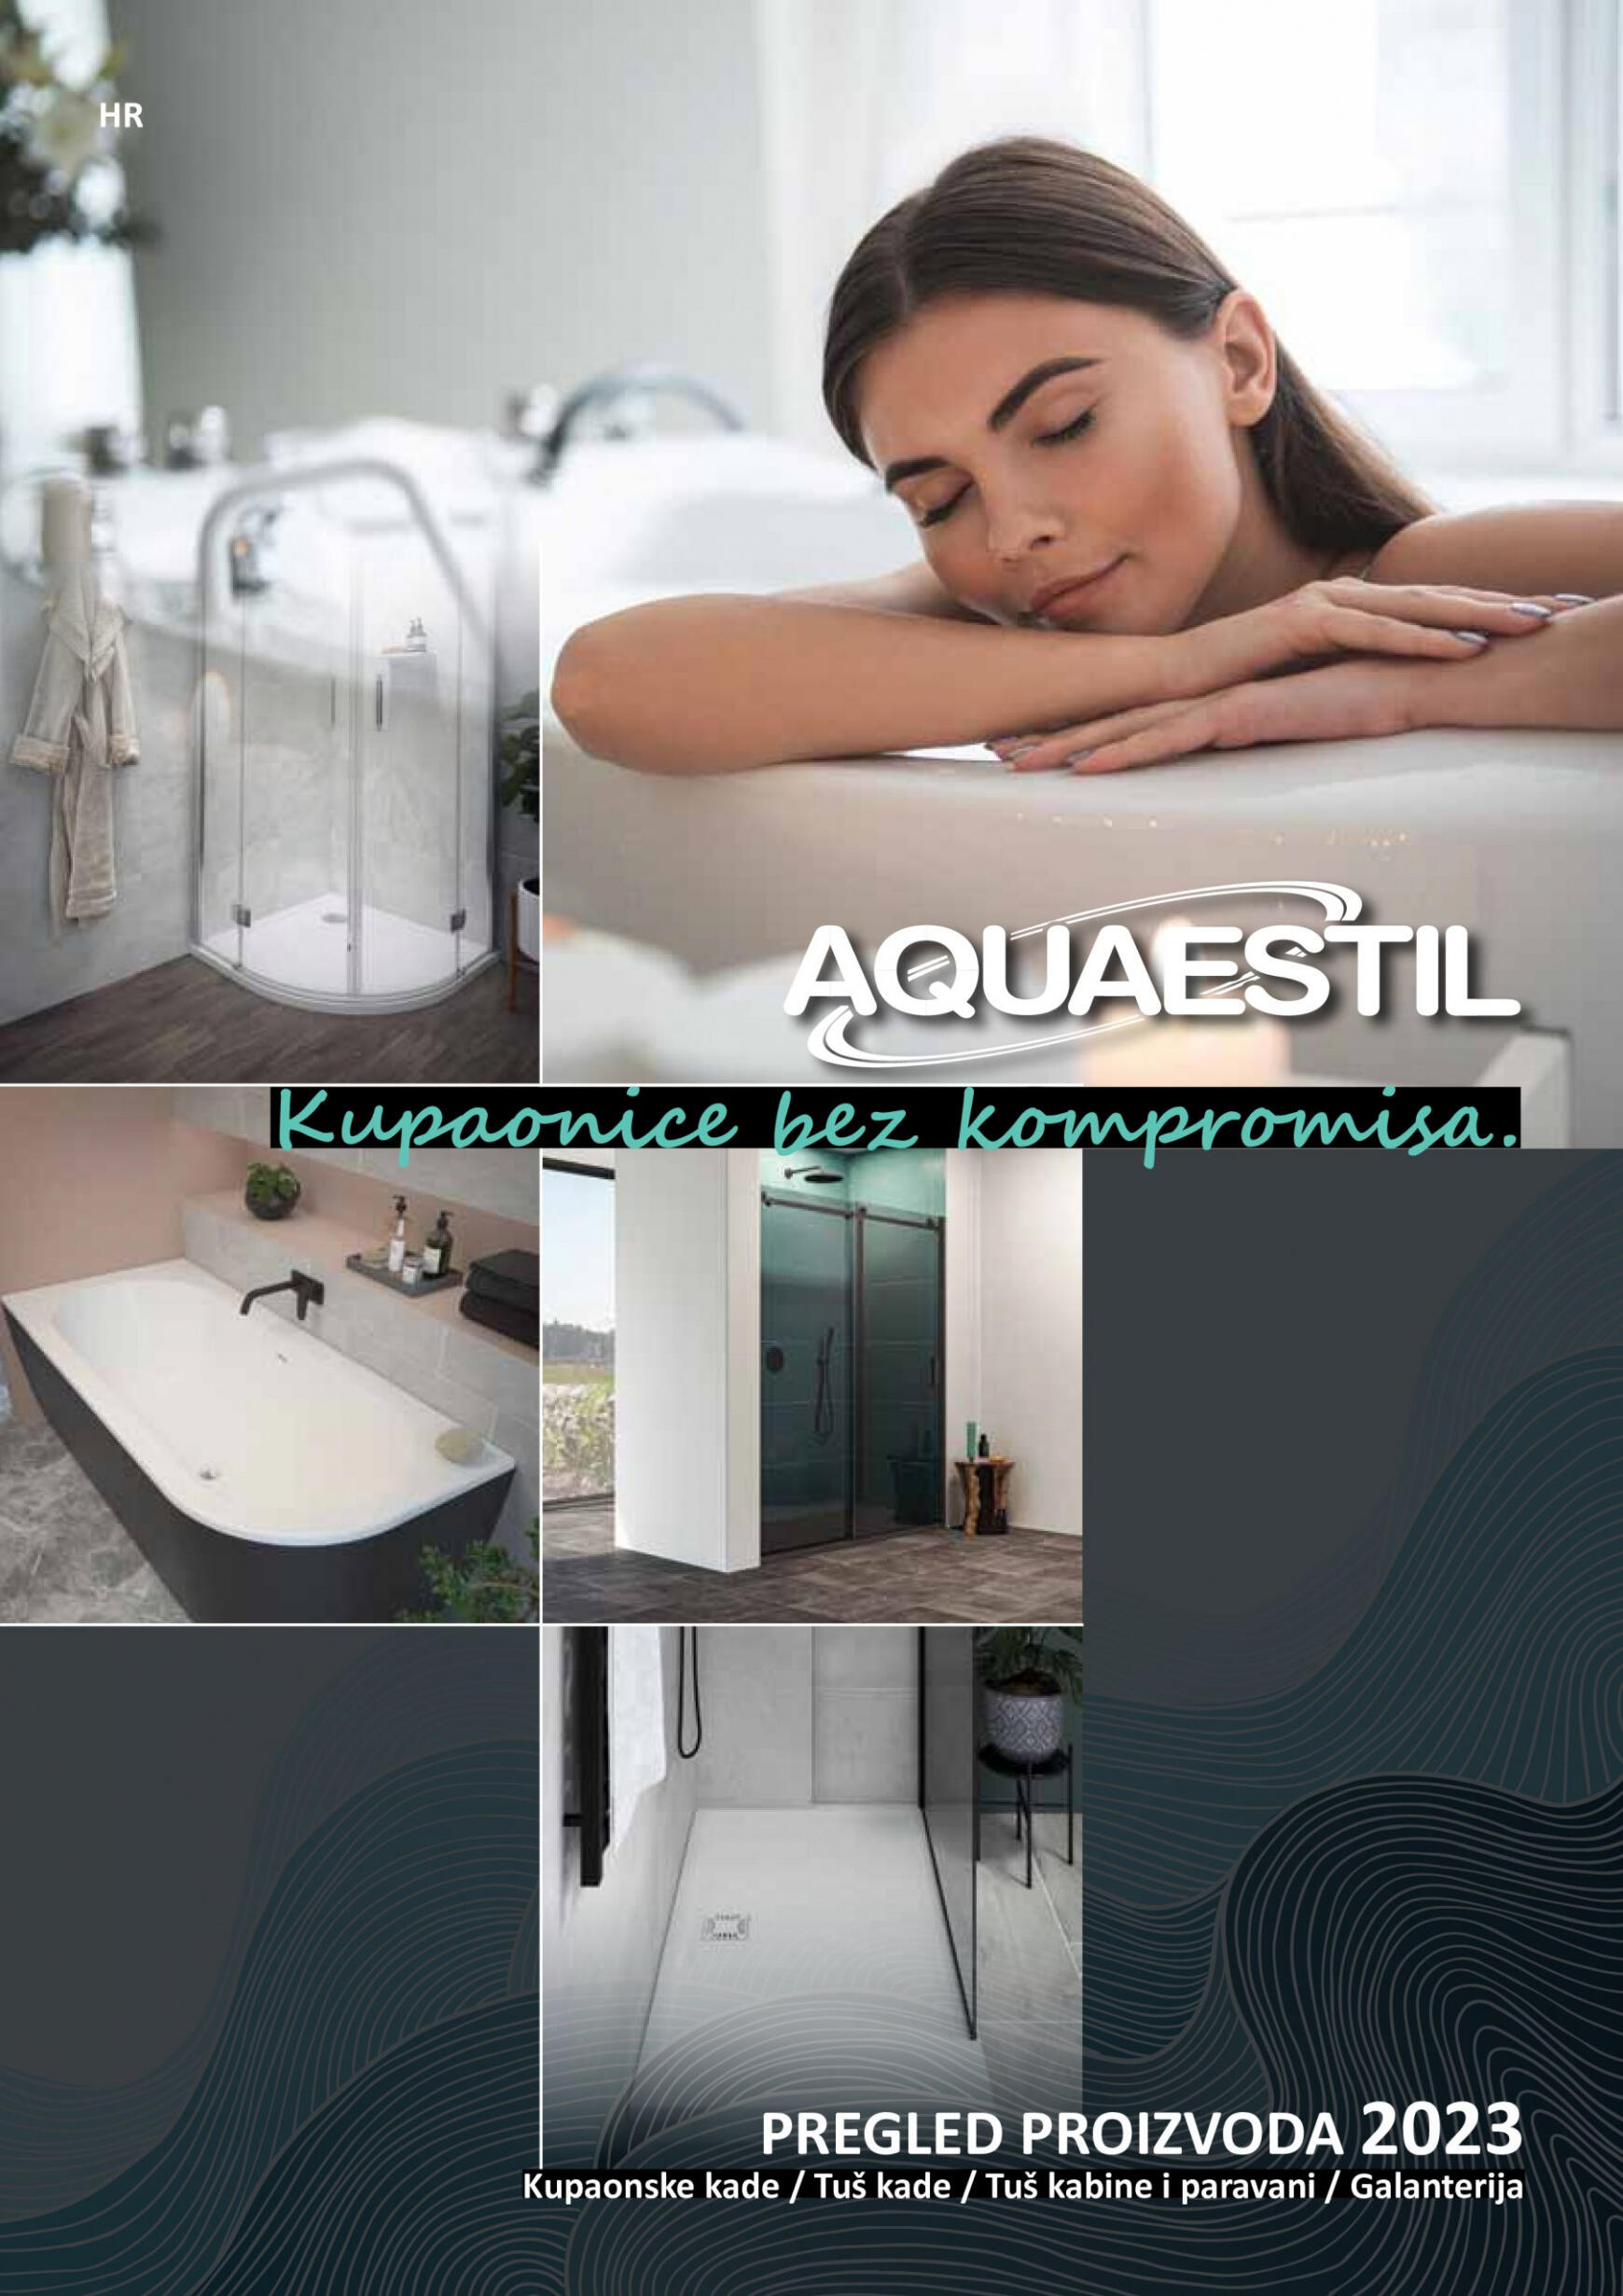 aquaestil - Aquaestil katalog od srijede 22.02. - page: 1